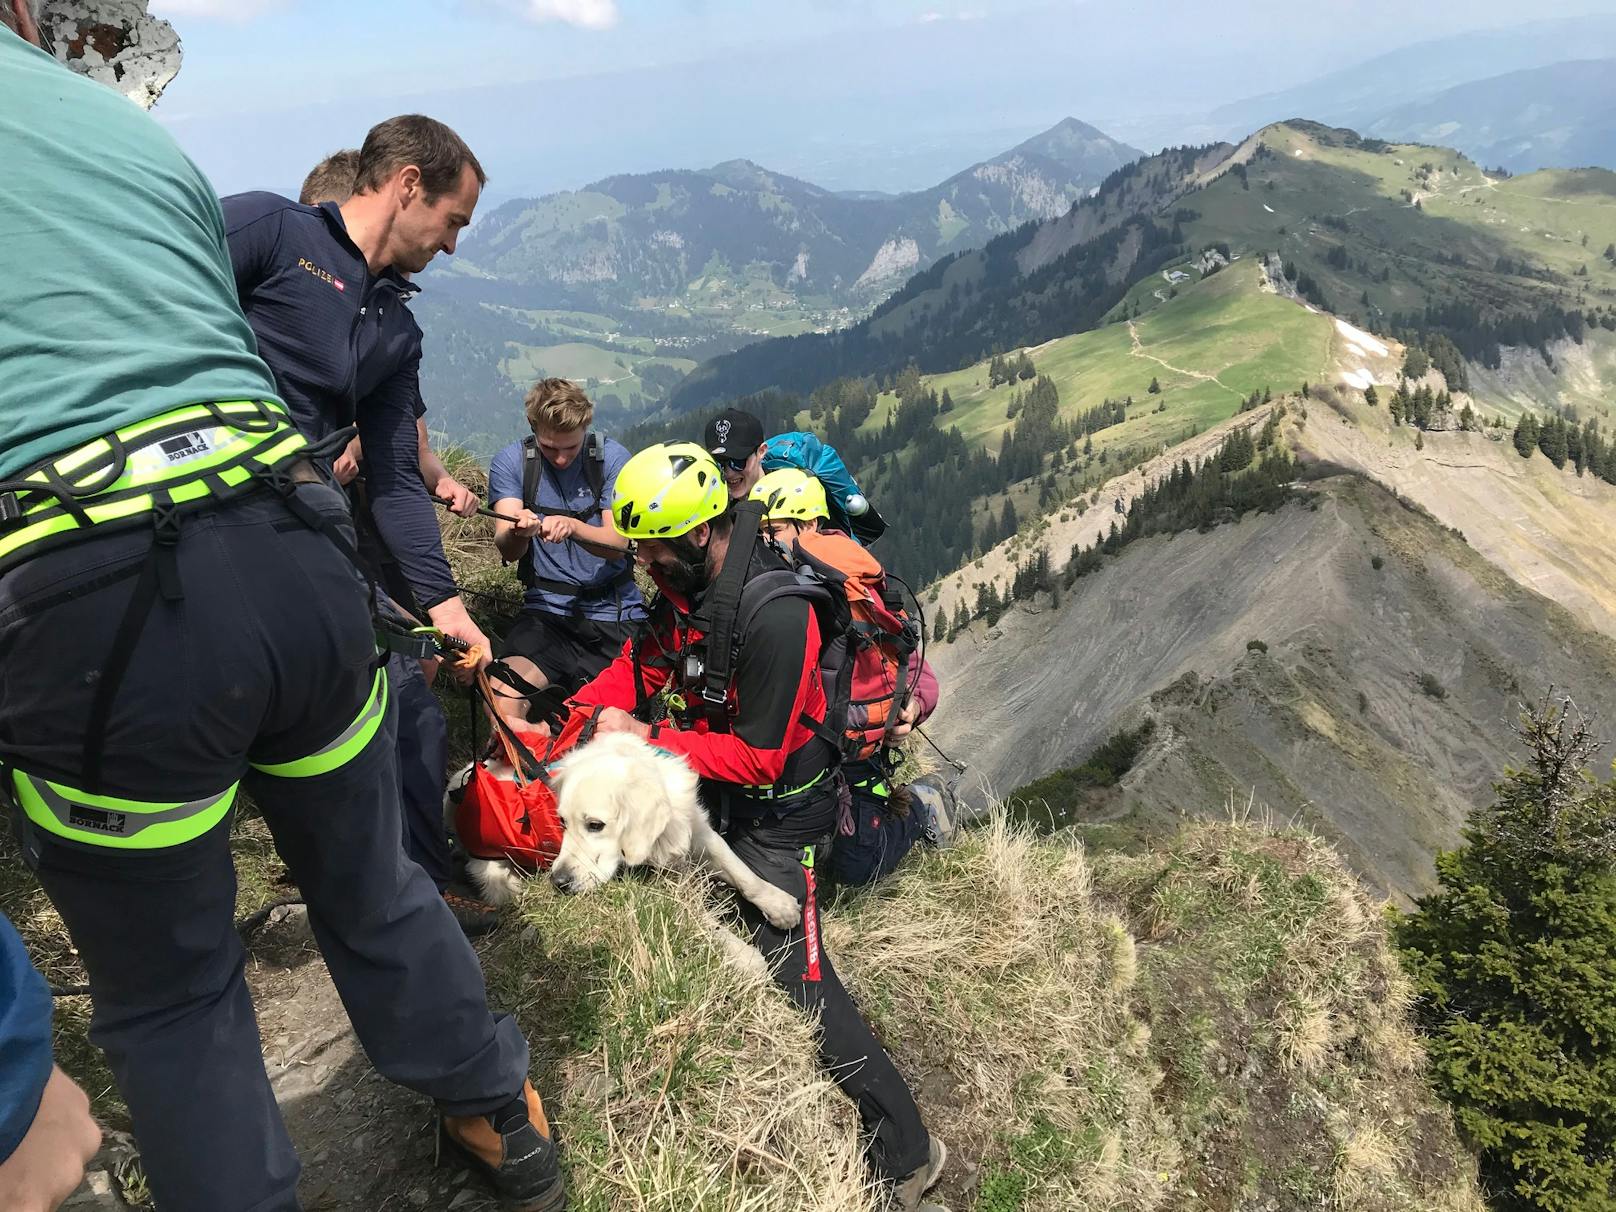 Die Einsatzkräfte konnten den Hund auf einem schmalen Felsvorsprung sichern und schließlich zurück auf den Weg ziehen. "Finn" hatte Glück und sich bei seinem Absturz nur leichte Verletzungen zugezogen.